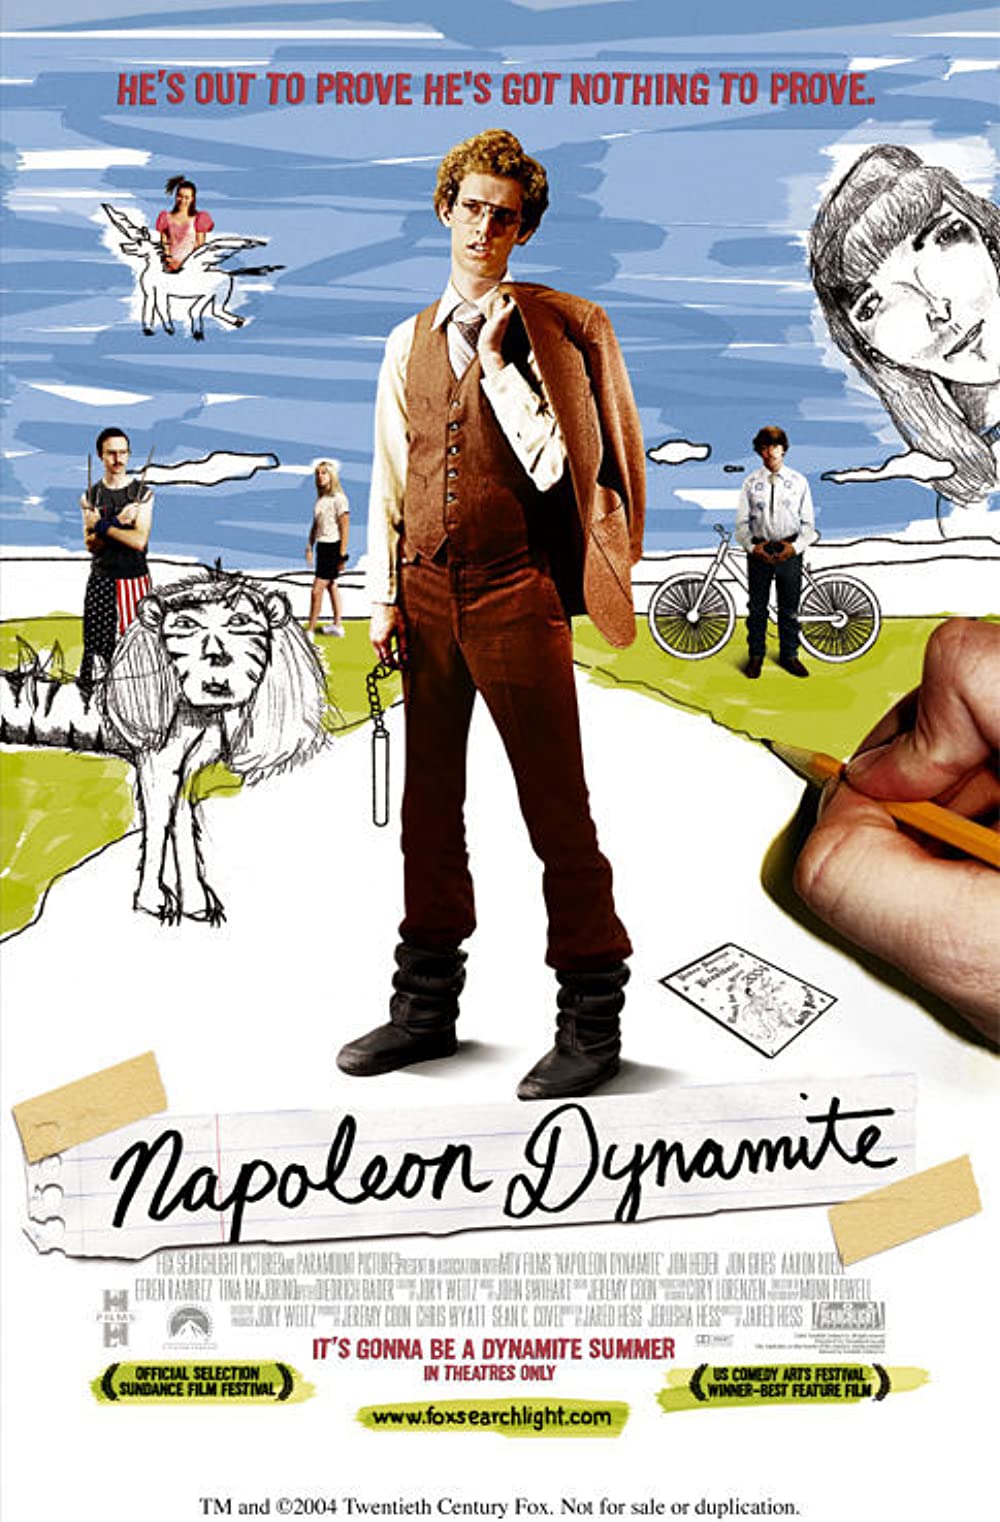 Filmbeschreibung zu Napoleon Dynamite